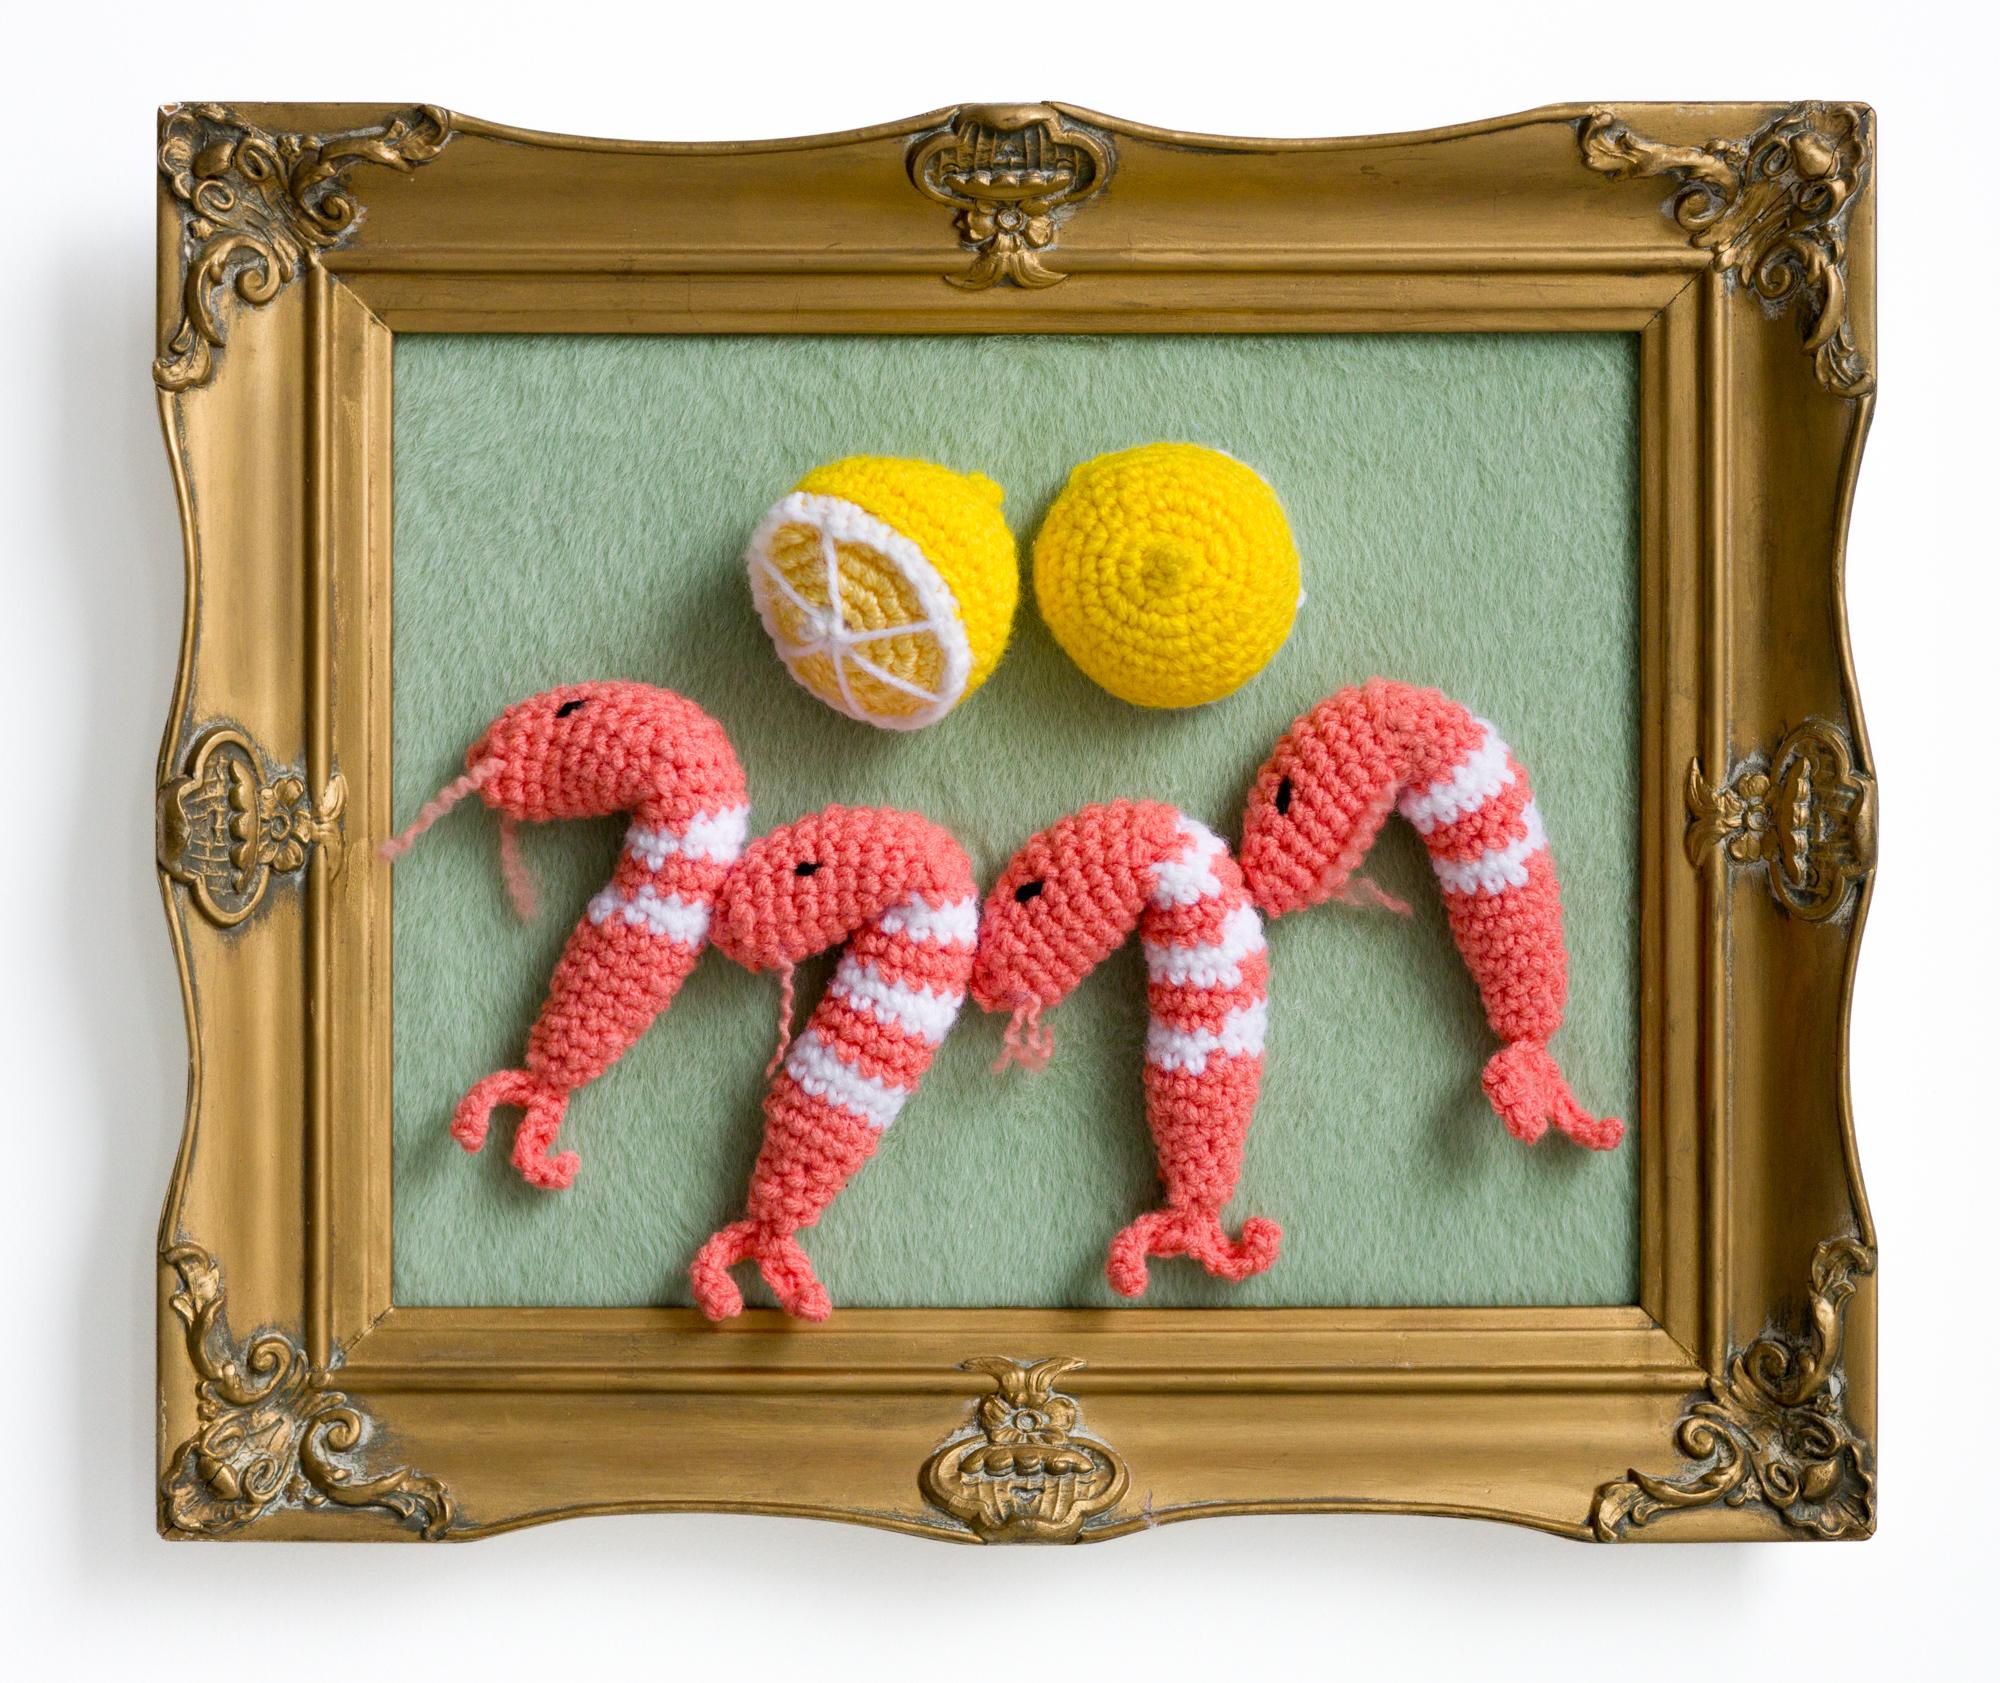 «hrimp Appetizer », fruits de mer, acrylique au crochet dans un cadre vintage, citrons